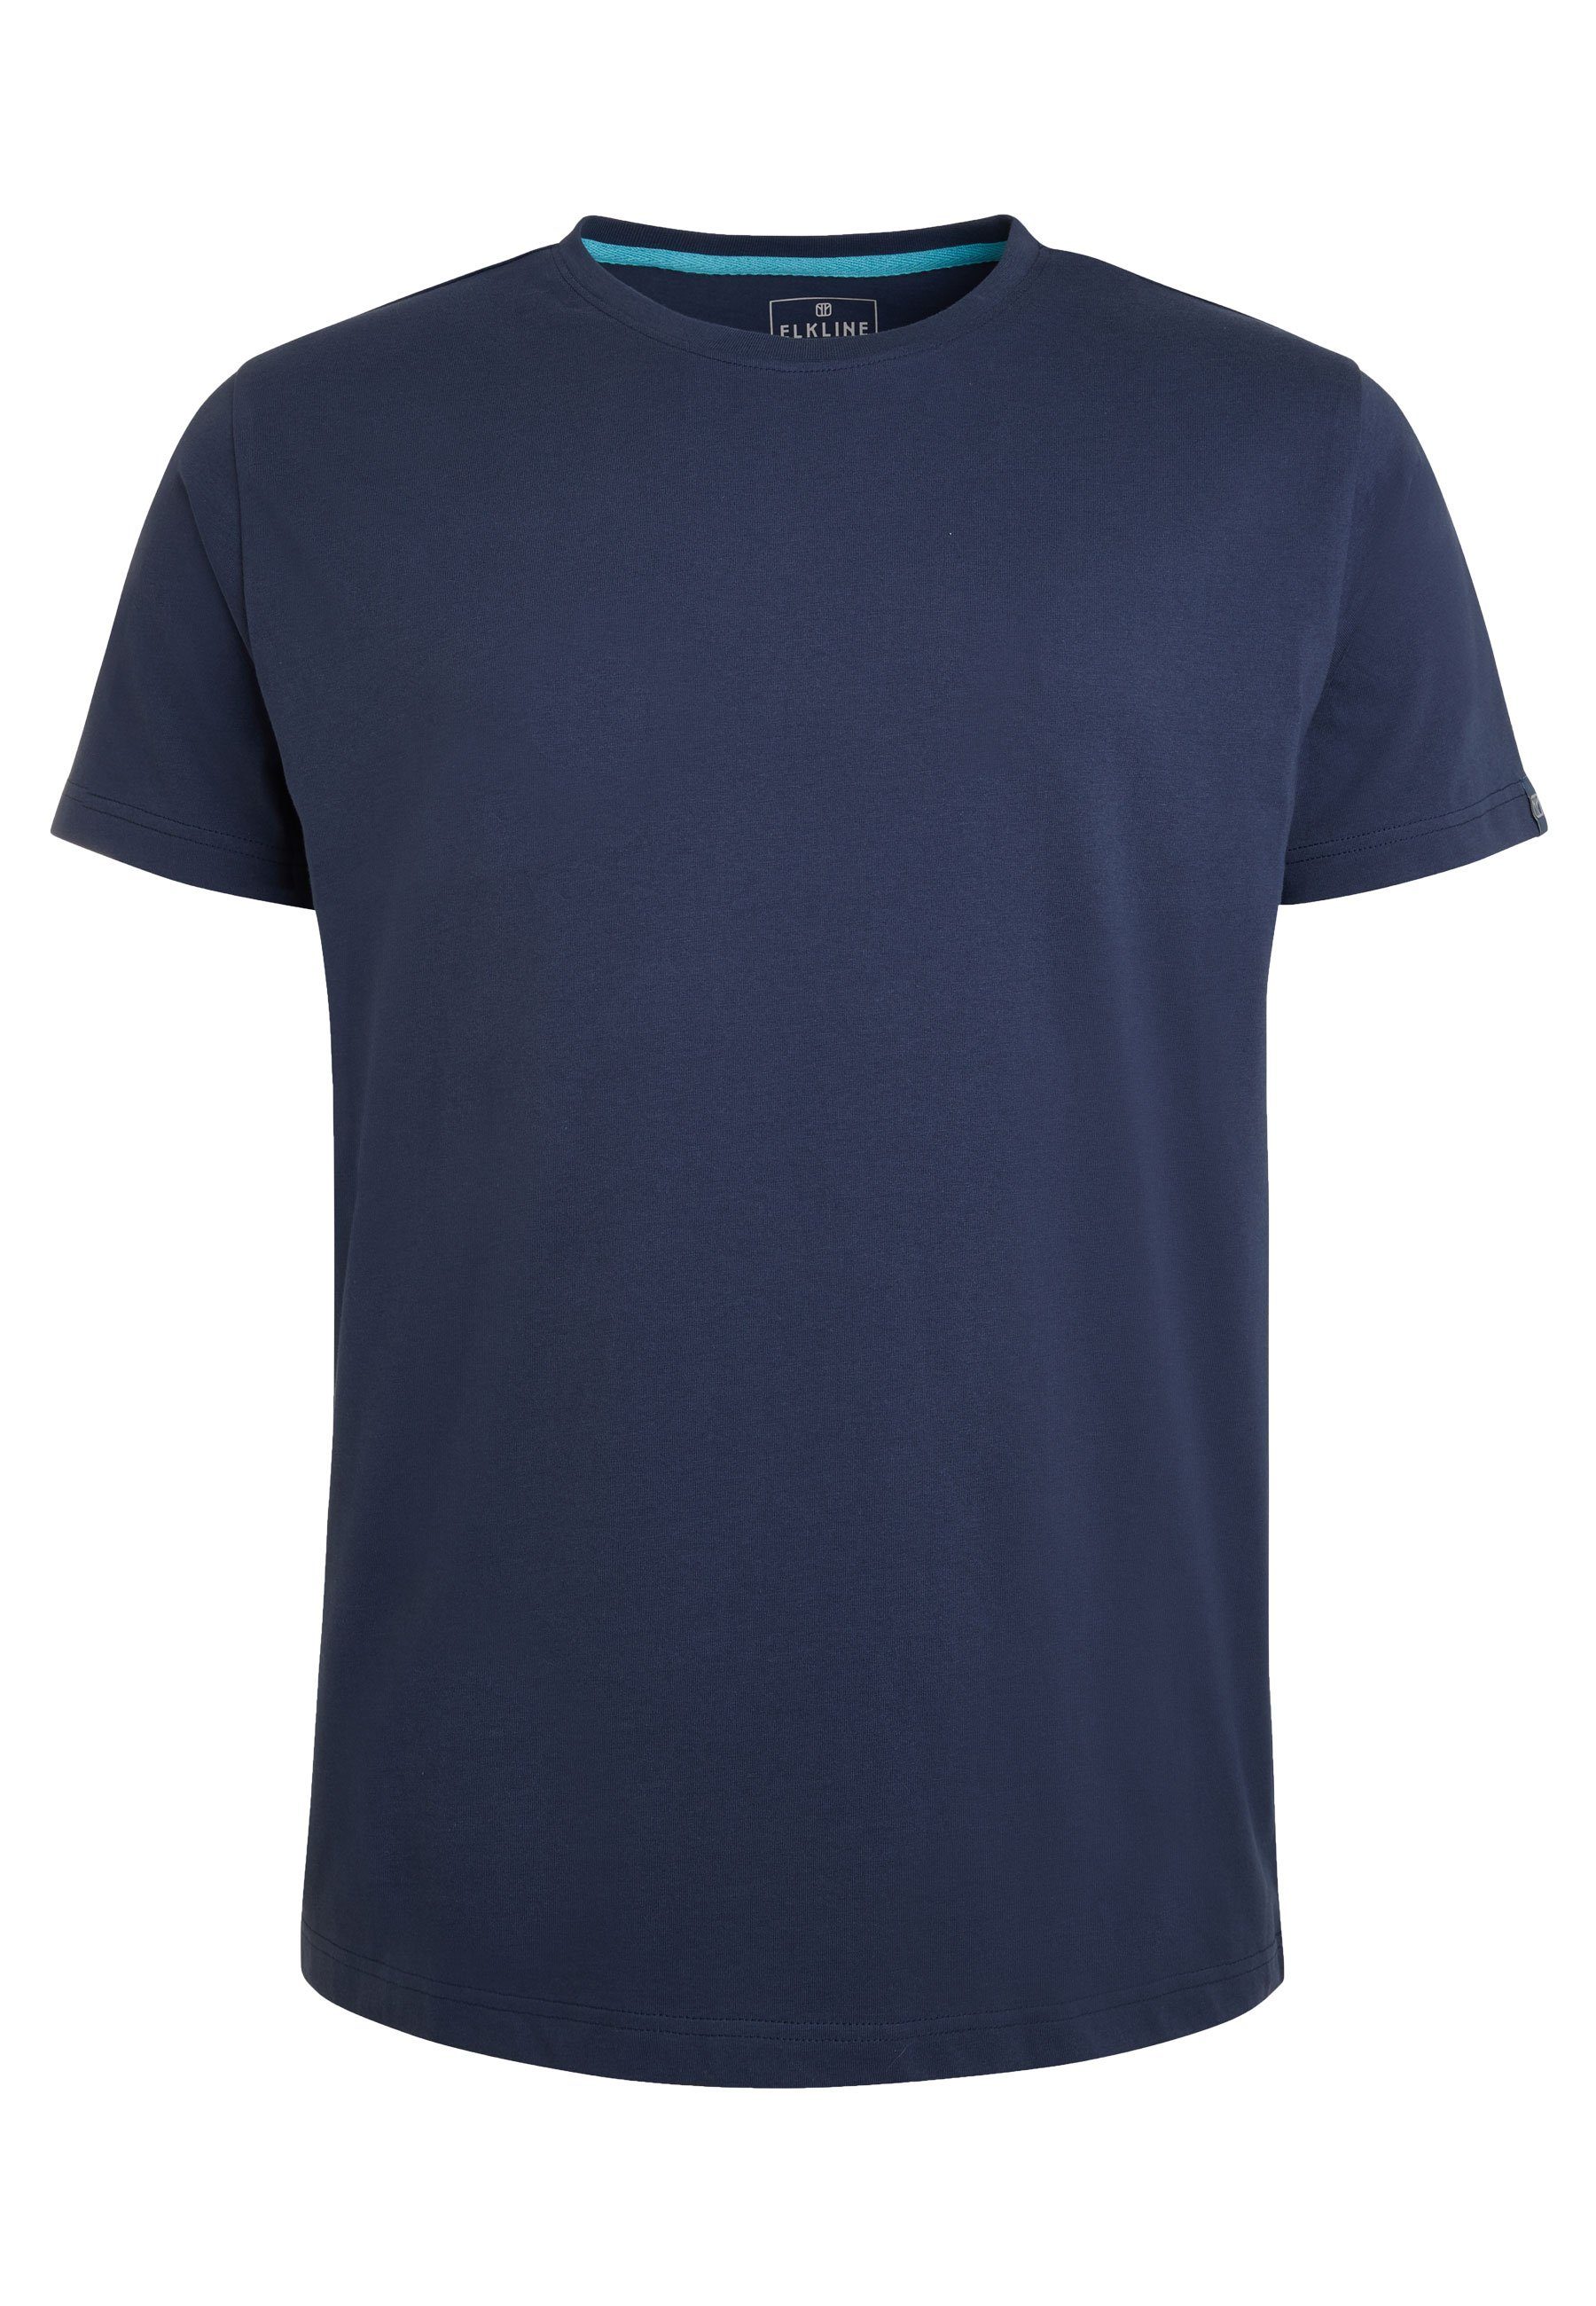 Elkline T-Shirt Must Have Basic Uni-Farben Shirt darkblue